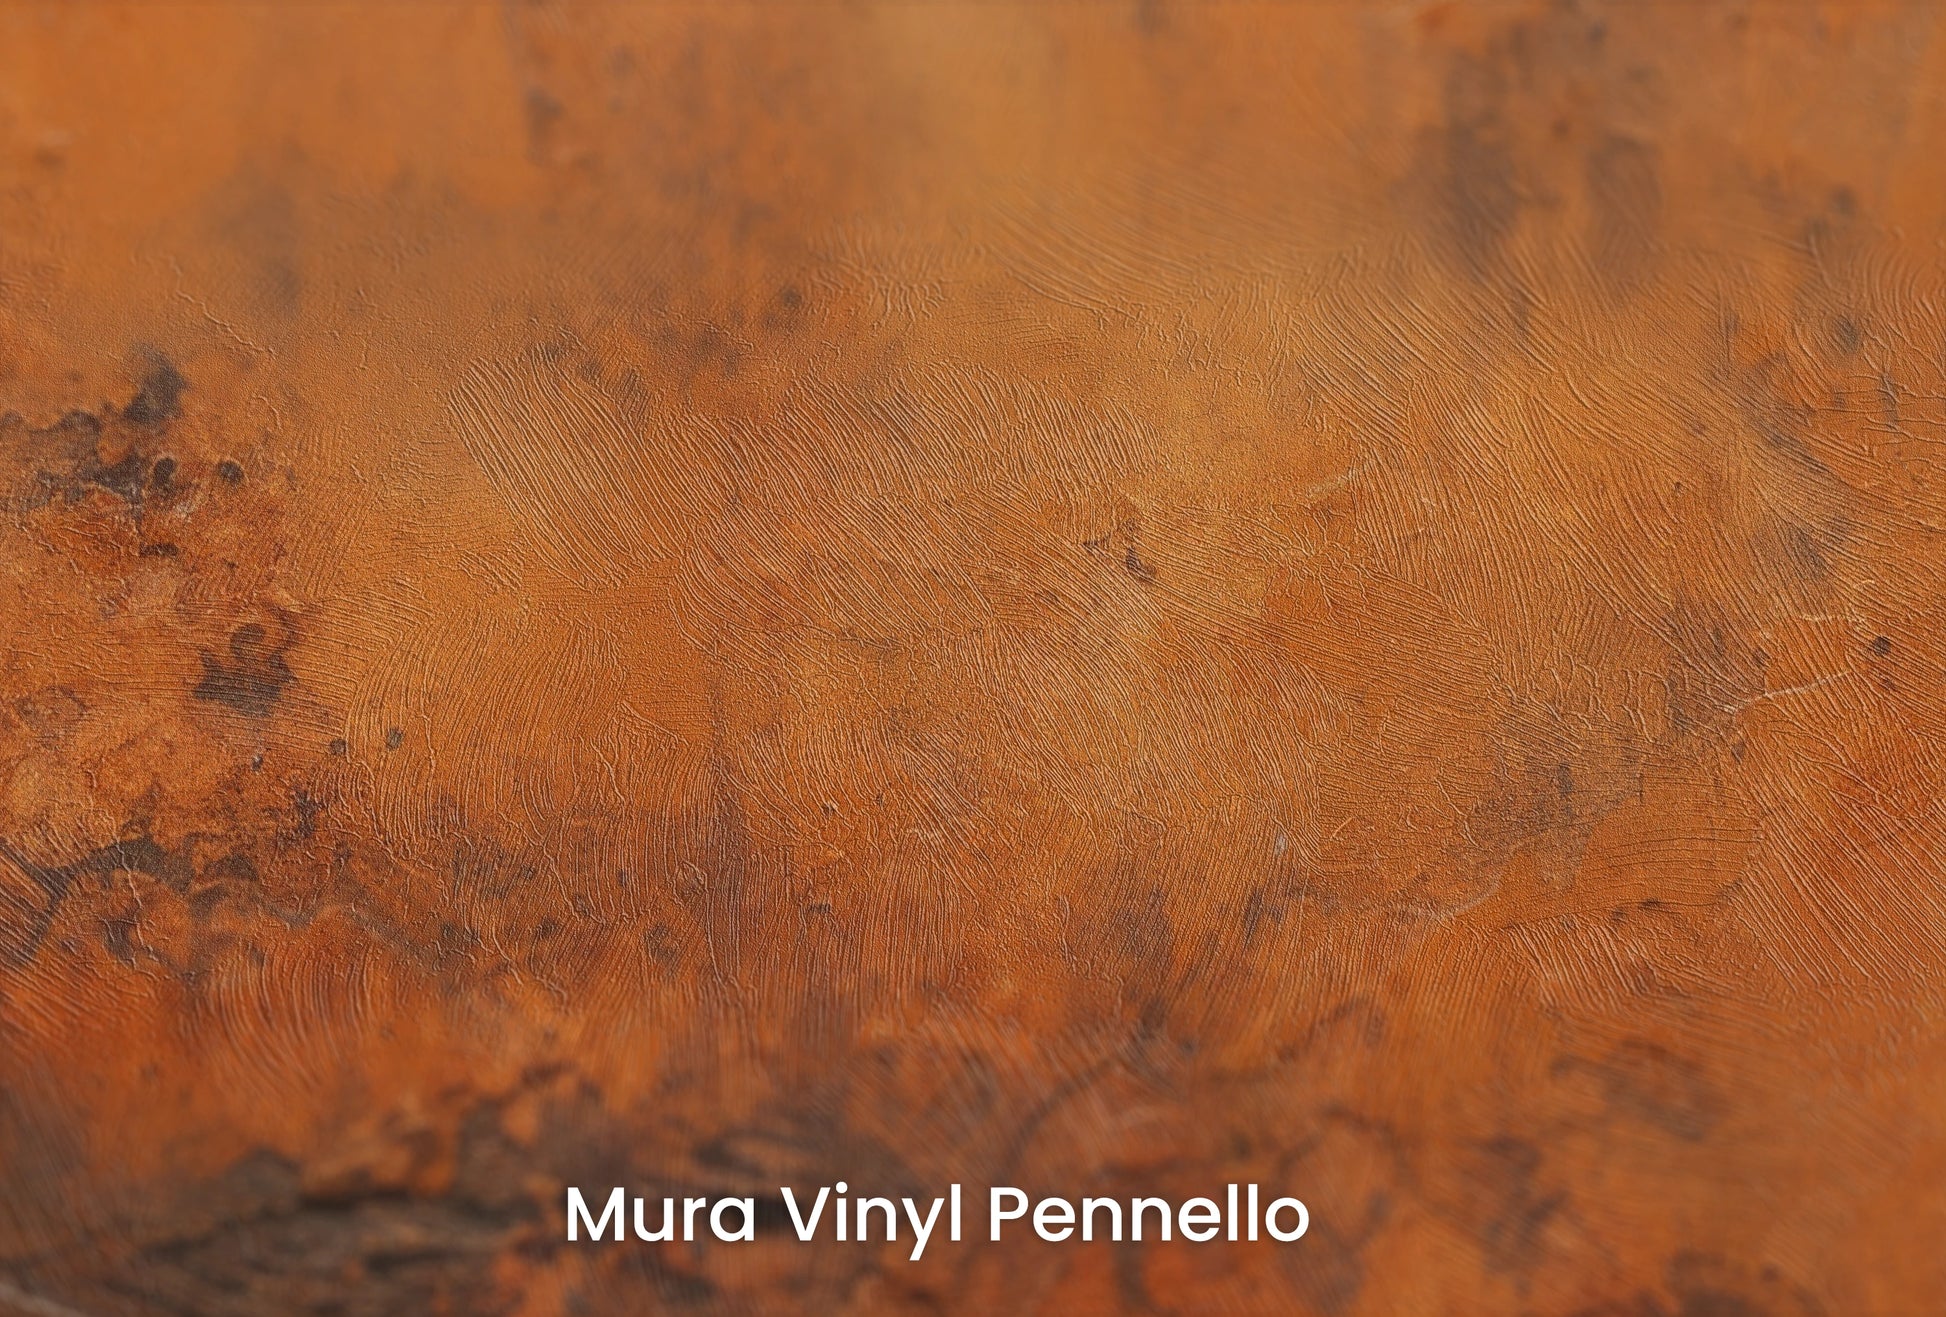 Zbliżenie na artystyczną fototapetę o nazwie Rustic Copper na podłożu Mura Vinyl Pennello - faktura pociągnięć pędzla malarskiego.